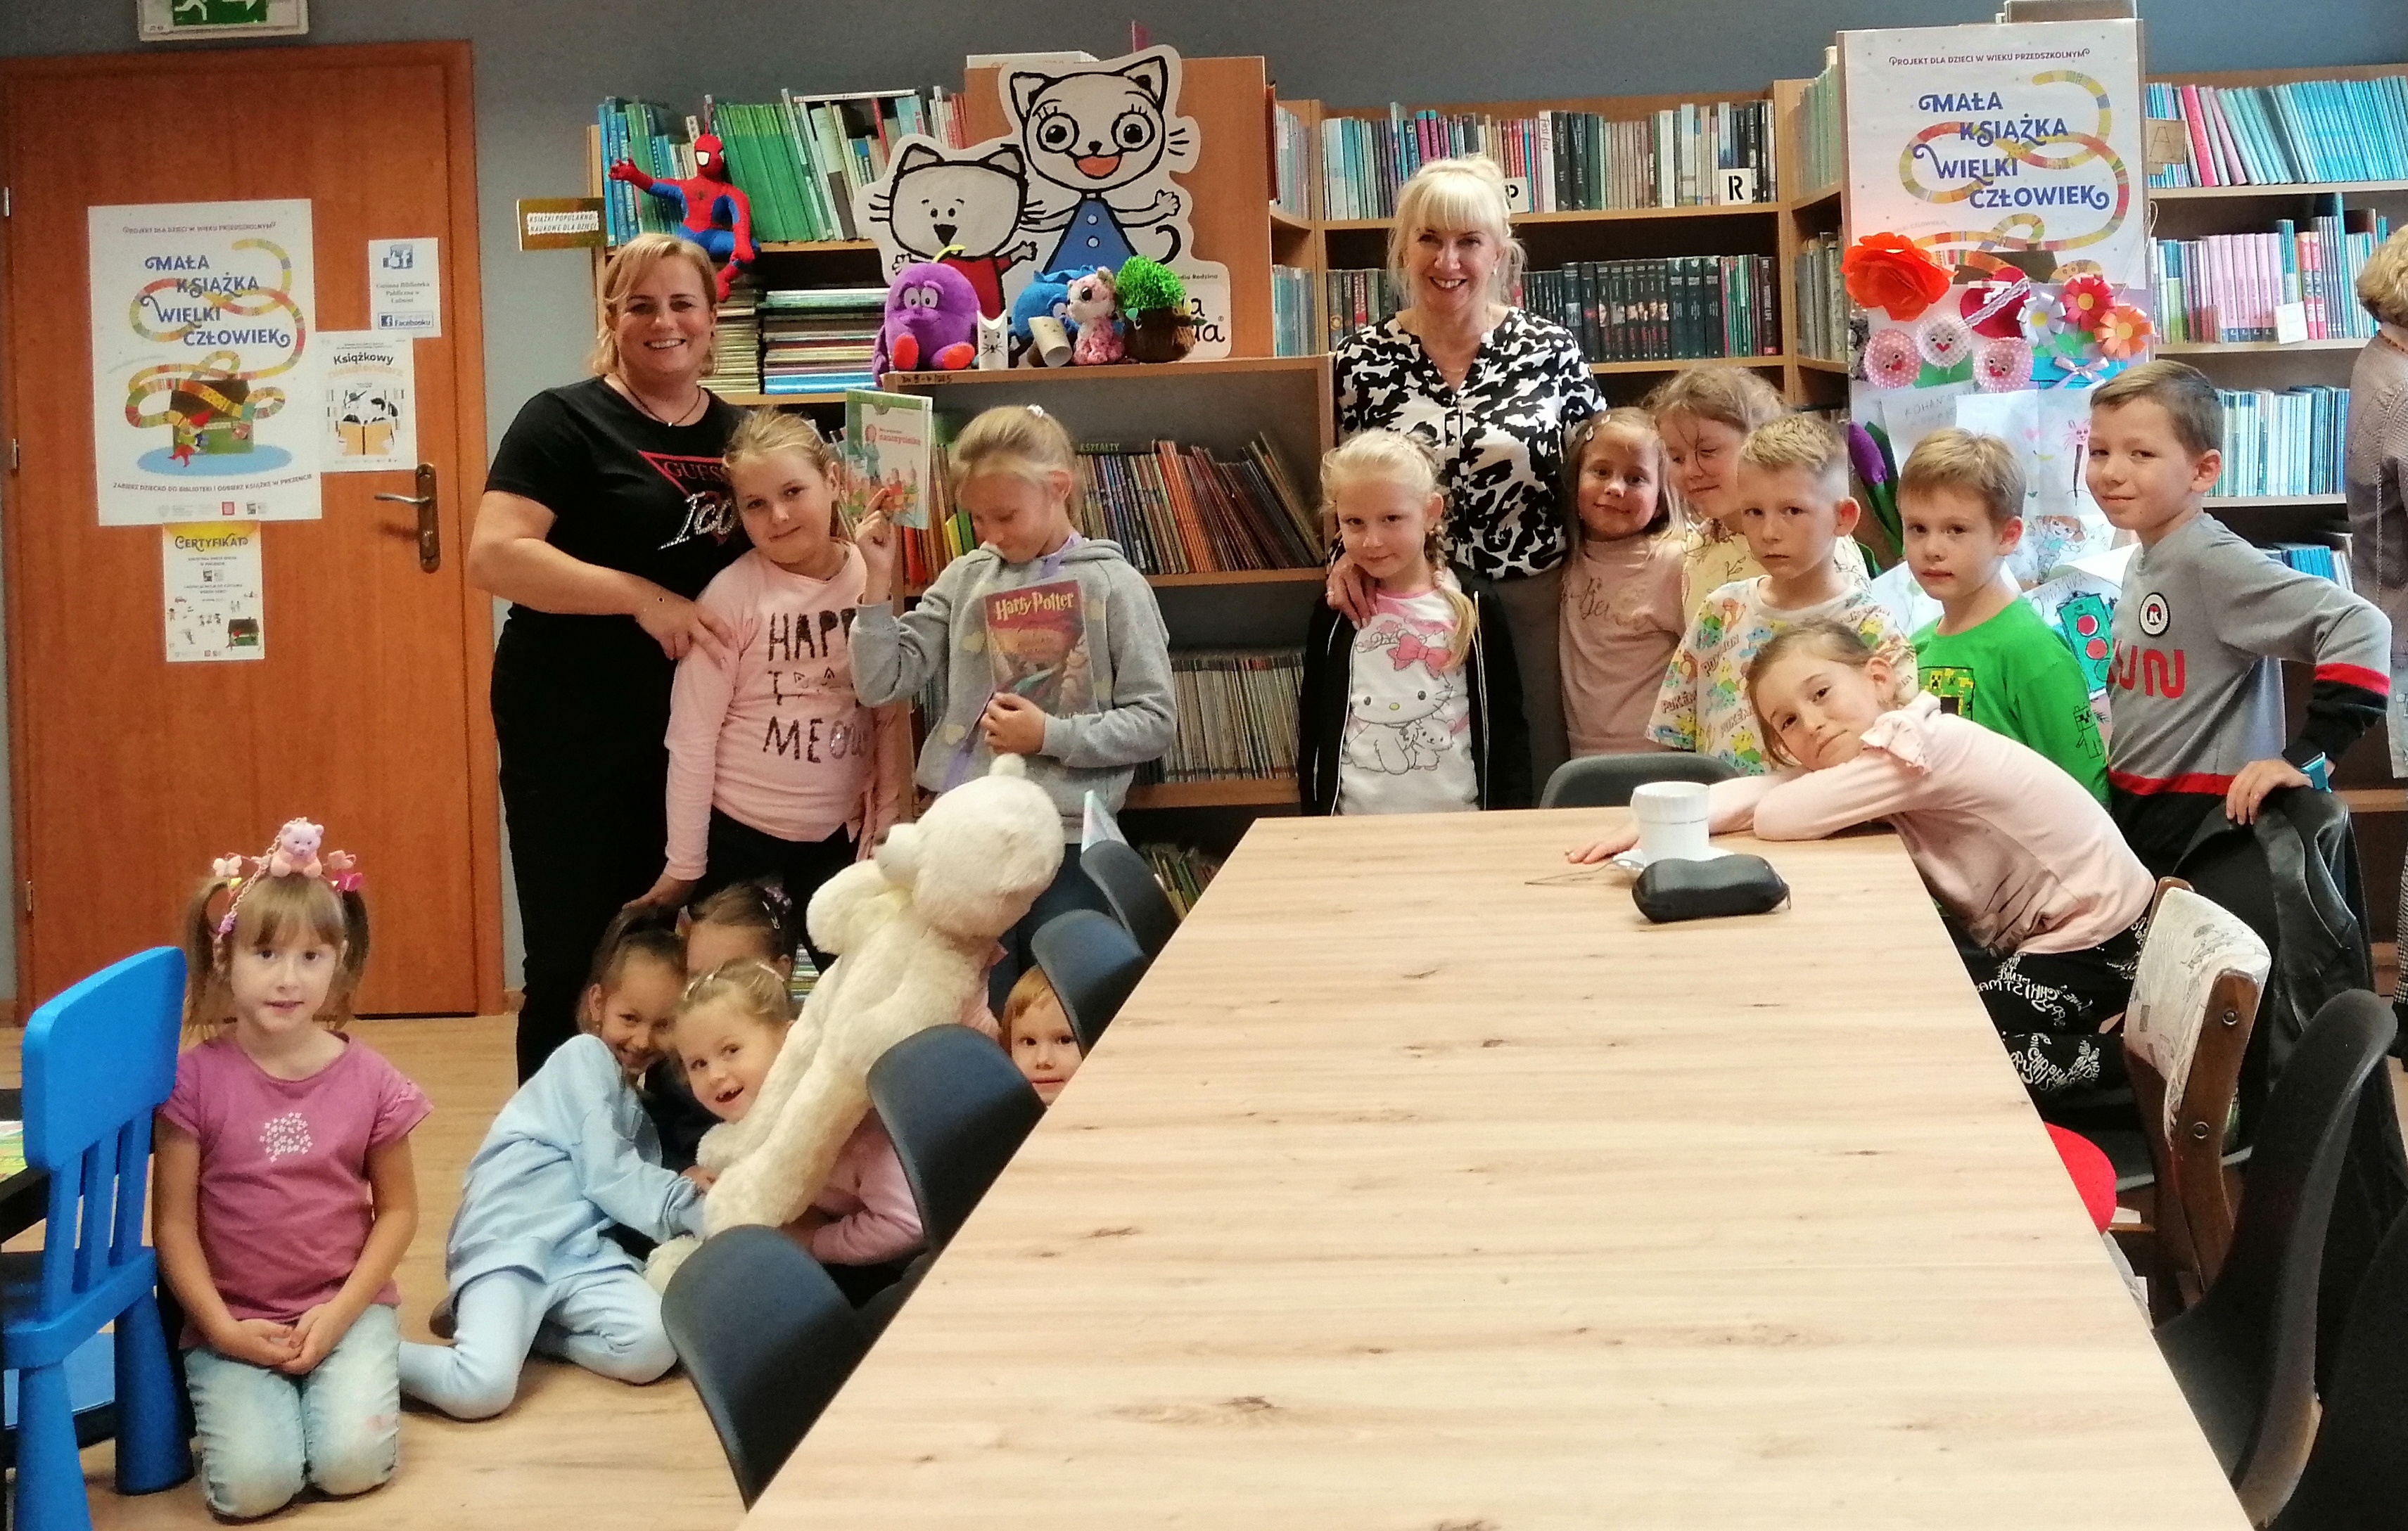 Beata Kopel - nauczycielka i radna odwiedziła dzieci w bibliotece. Fot. GBP Lubomia